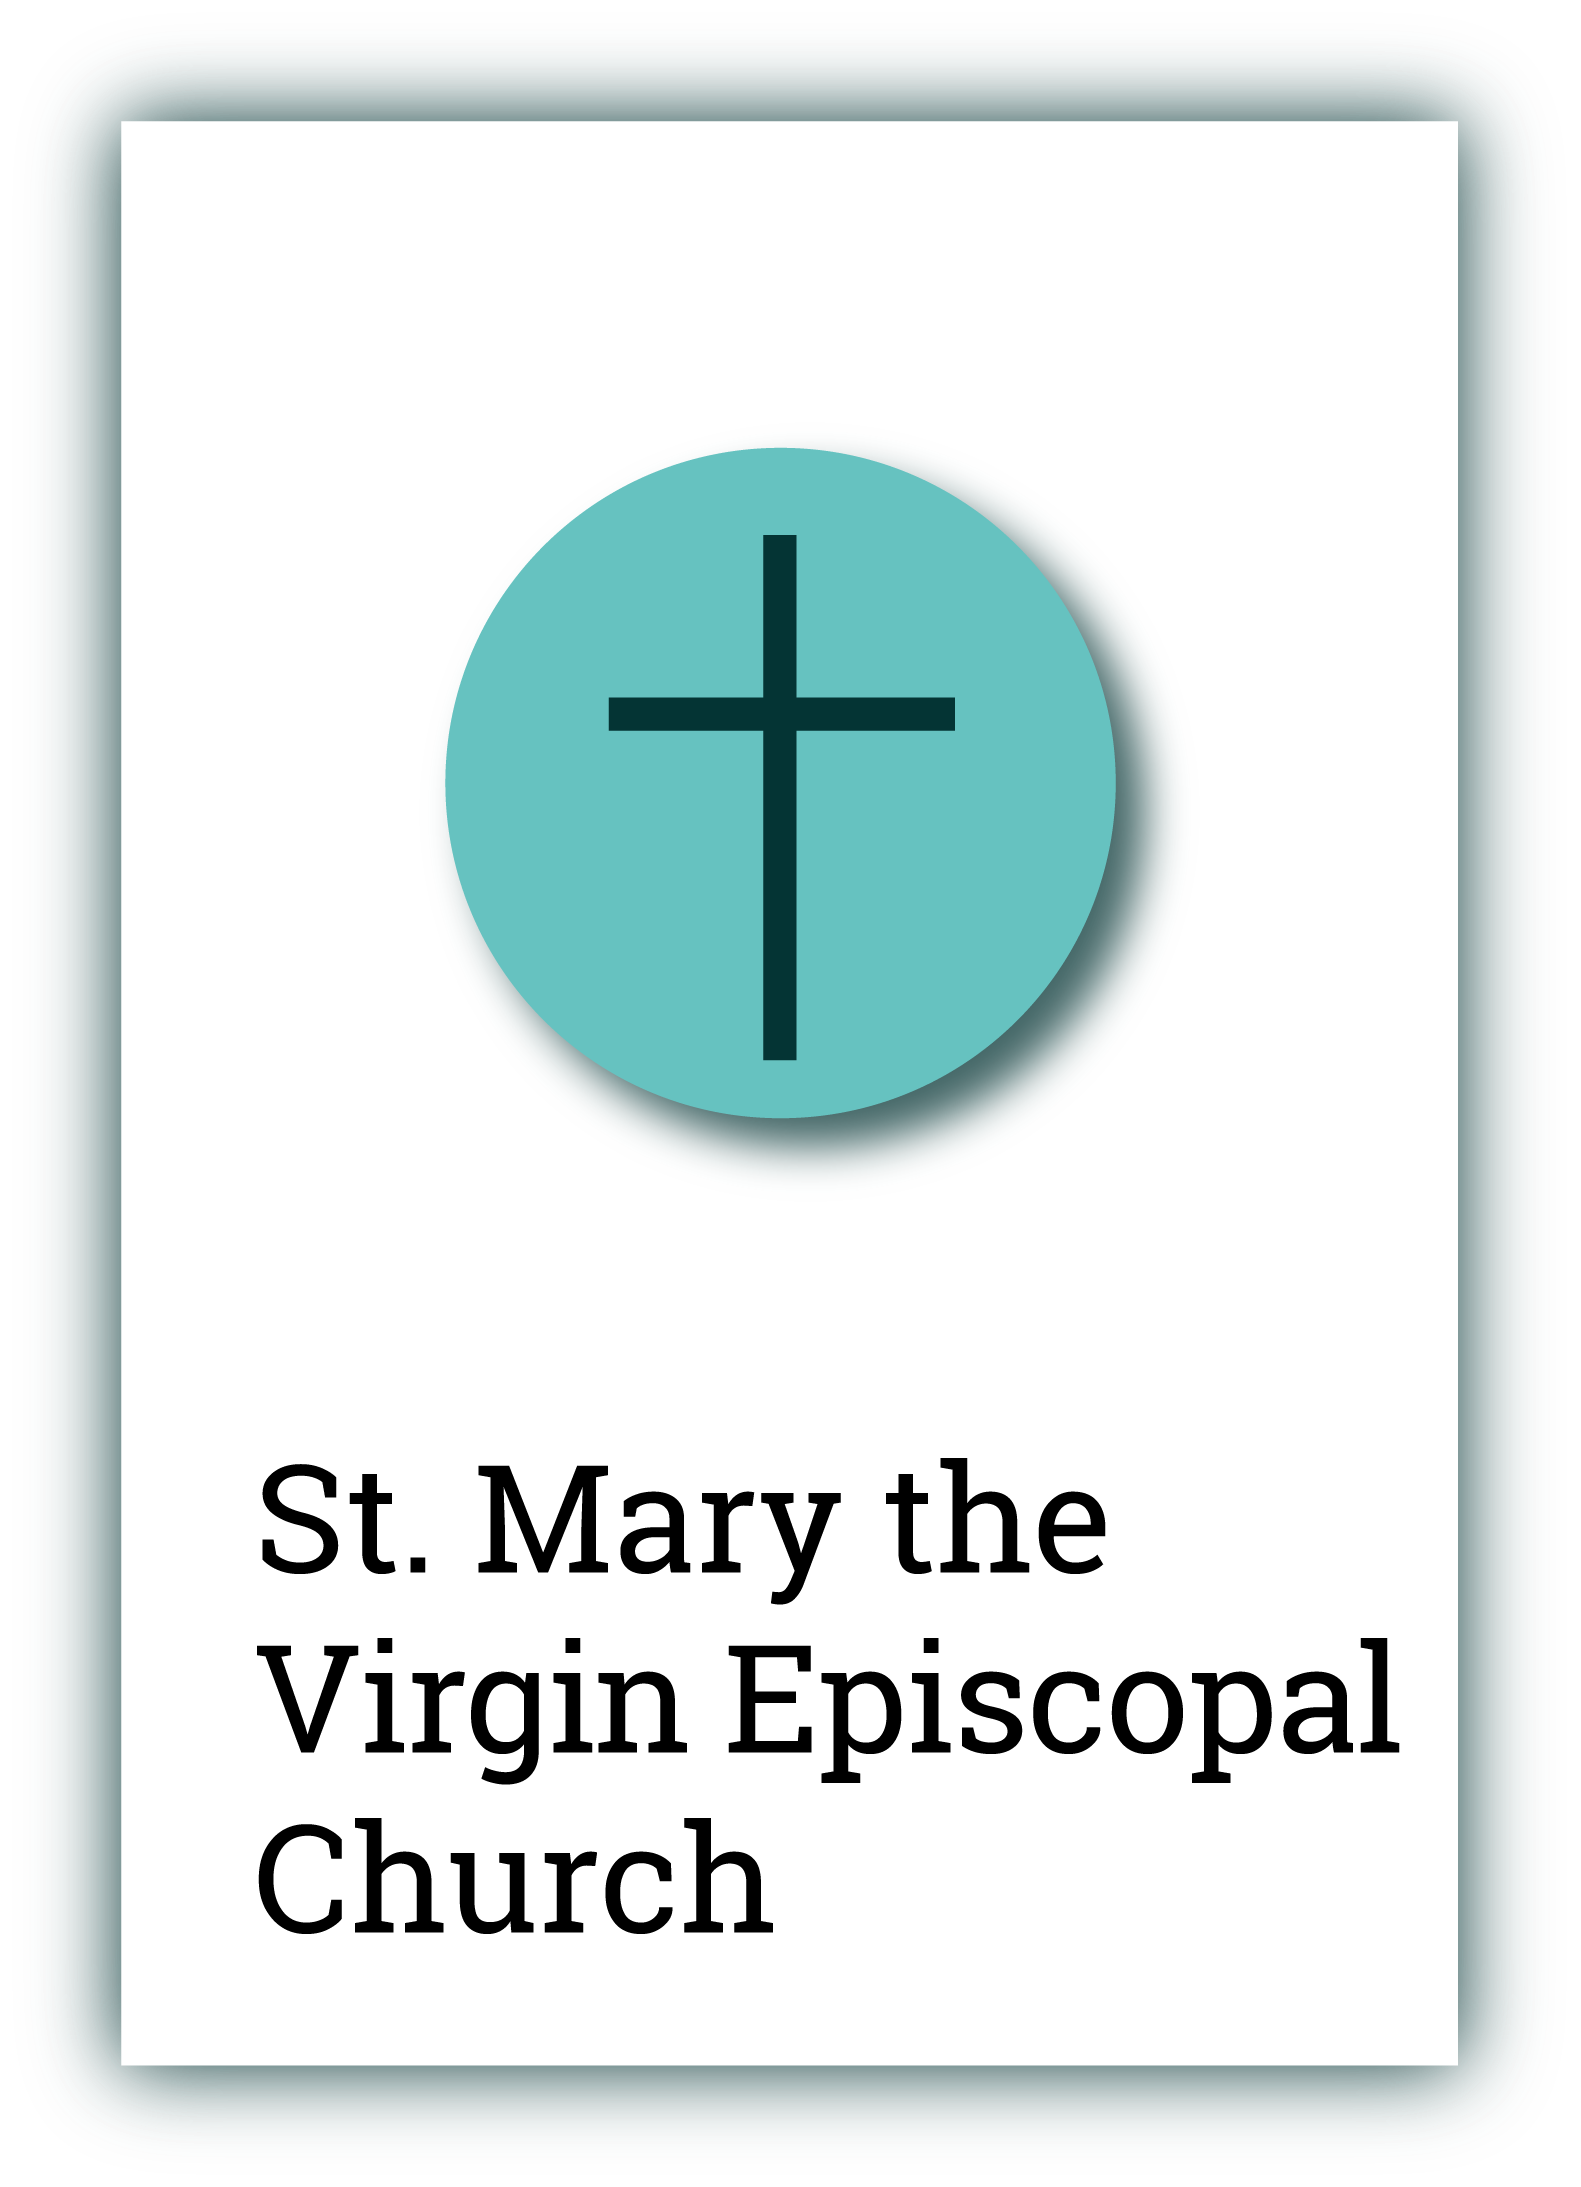 St. Mary the Virgin Episcopal Church